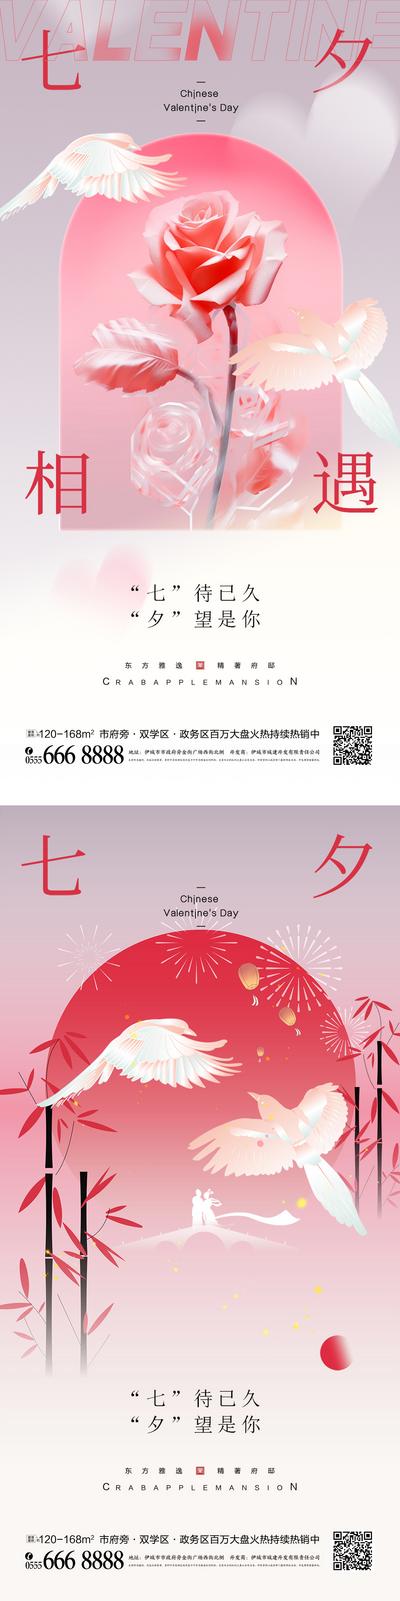 南门网 海报 中国传统节日 房地产 七夕 喜鹊 情人节 玫瑰花 竹子 酸性 中式 调性 系列